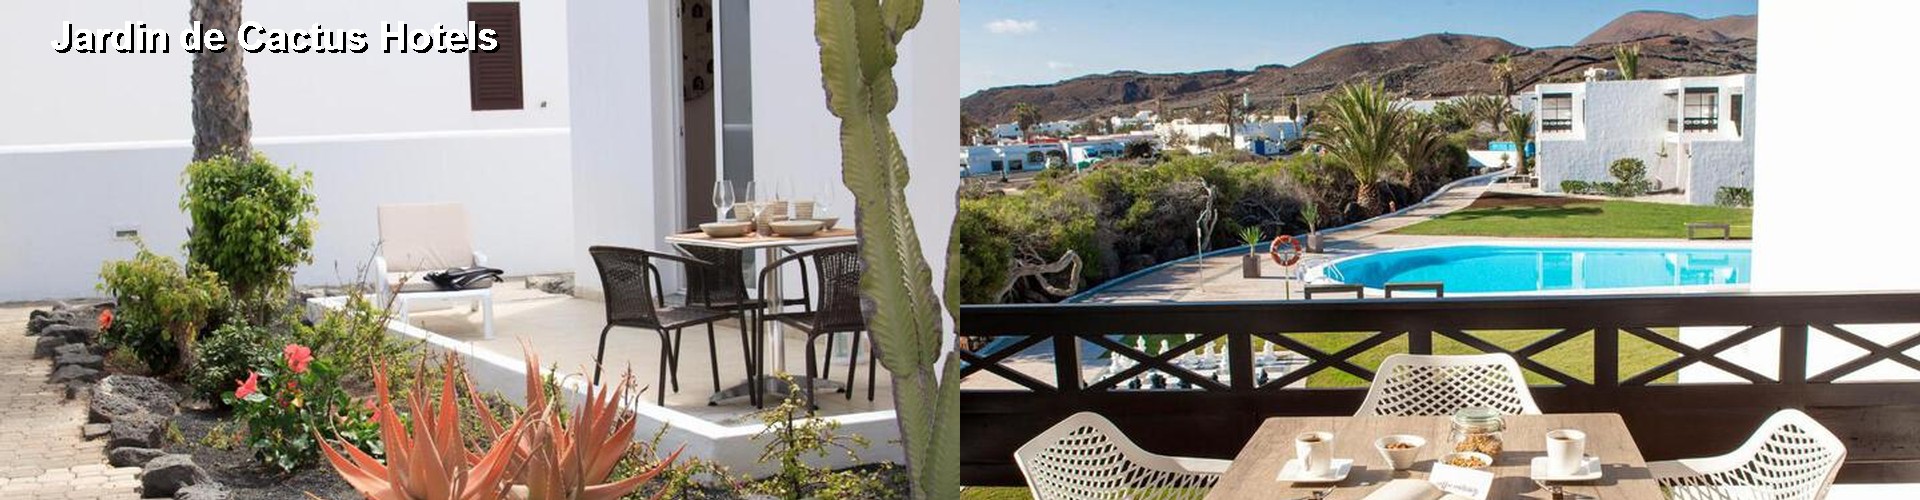 5 Best Hotels near Jardin de Cactus